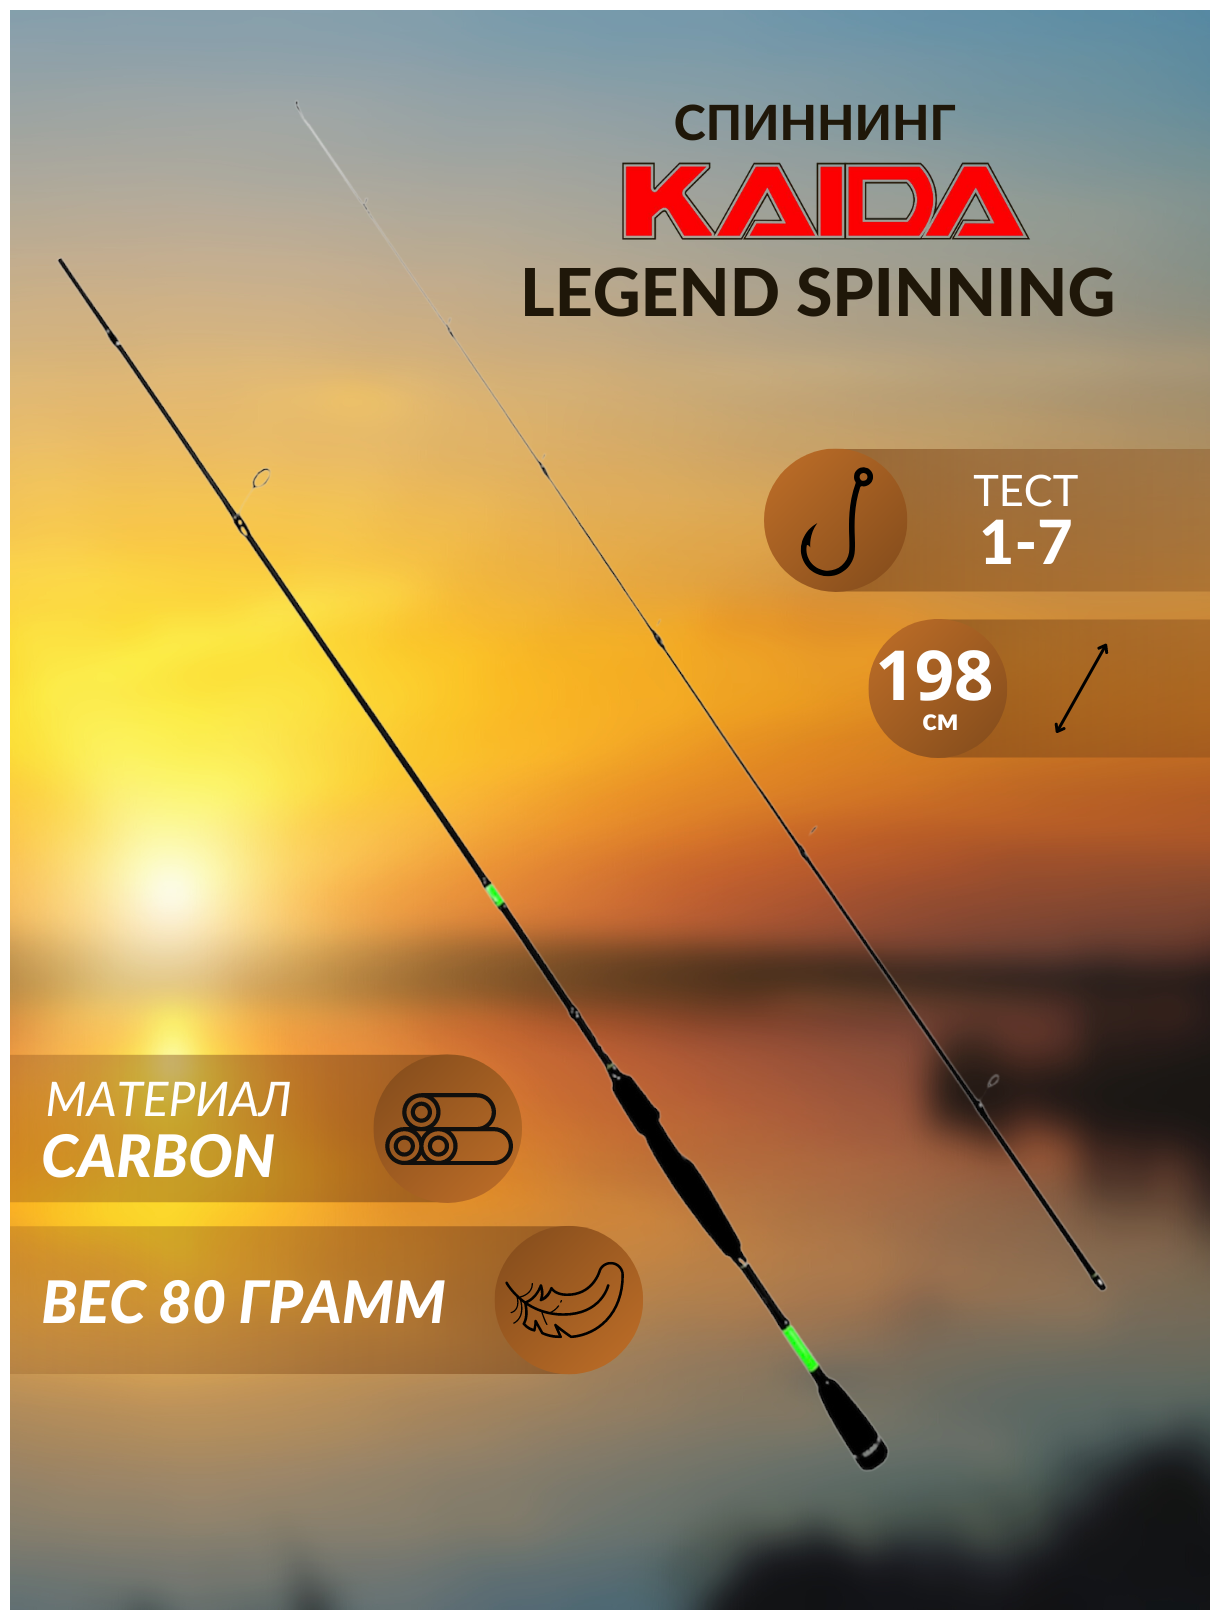 Спиннинг Kaida Legend Spinning 198 см тест 1-7 грамм ультралайт на окуня, головля, форель , спиннинг для джига, твичинга